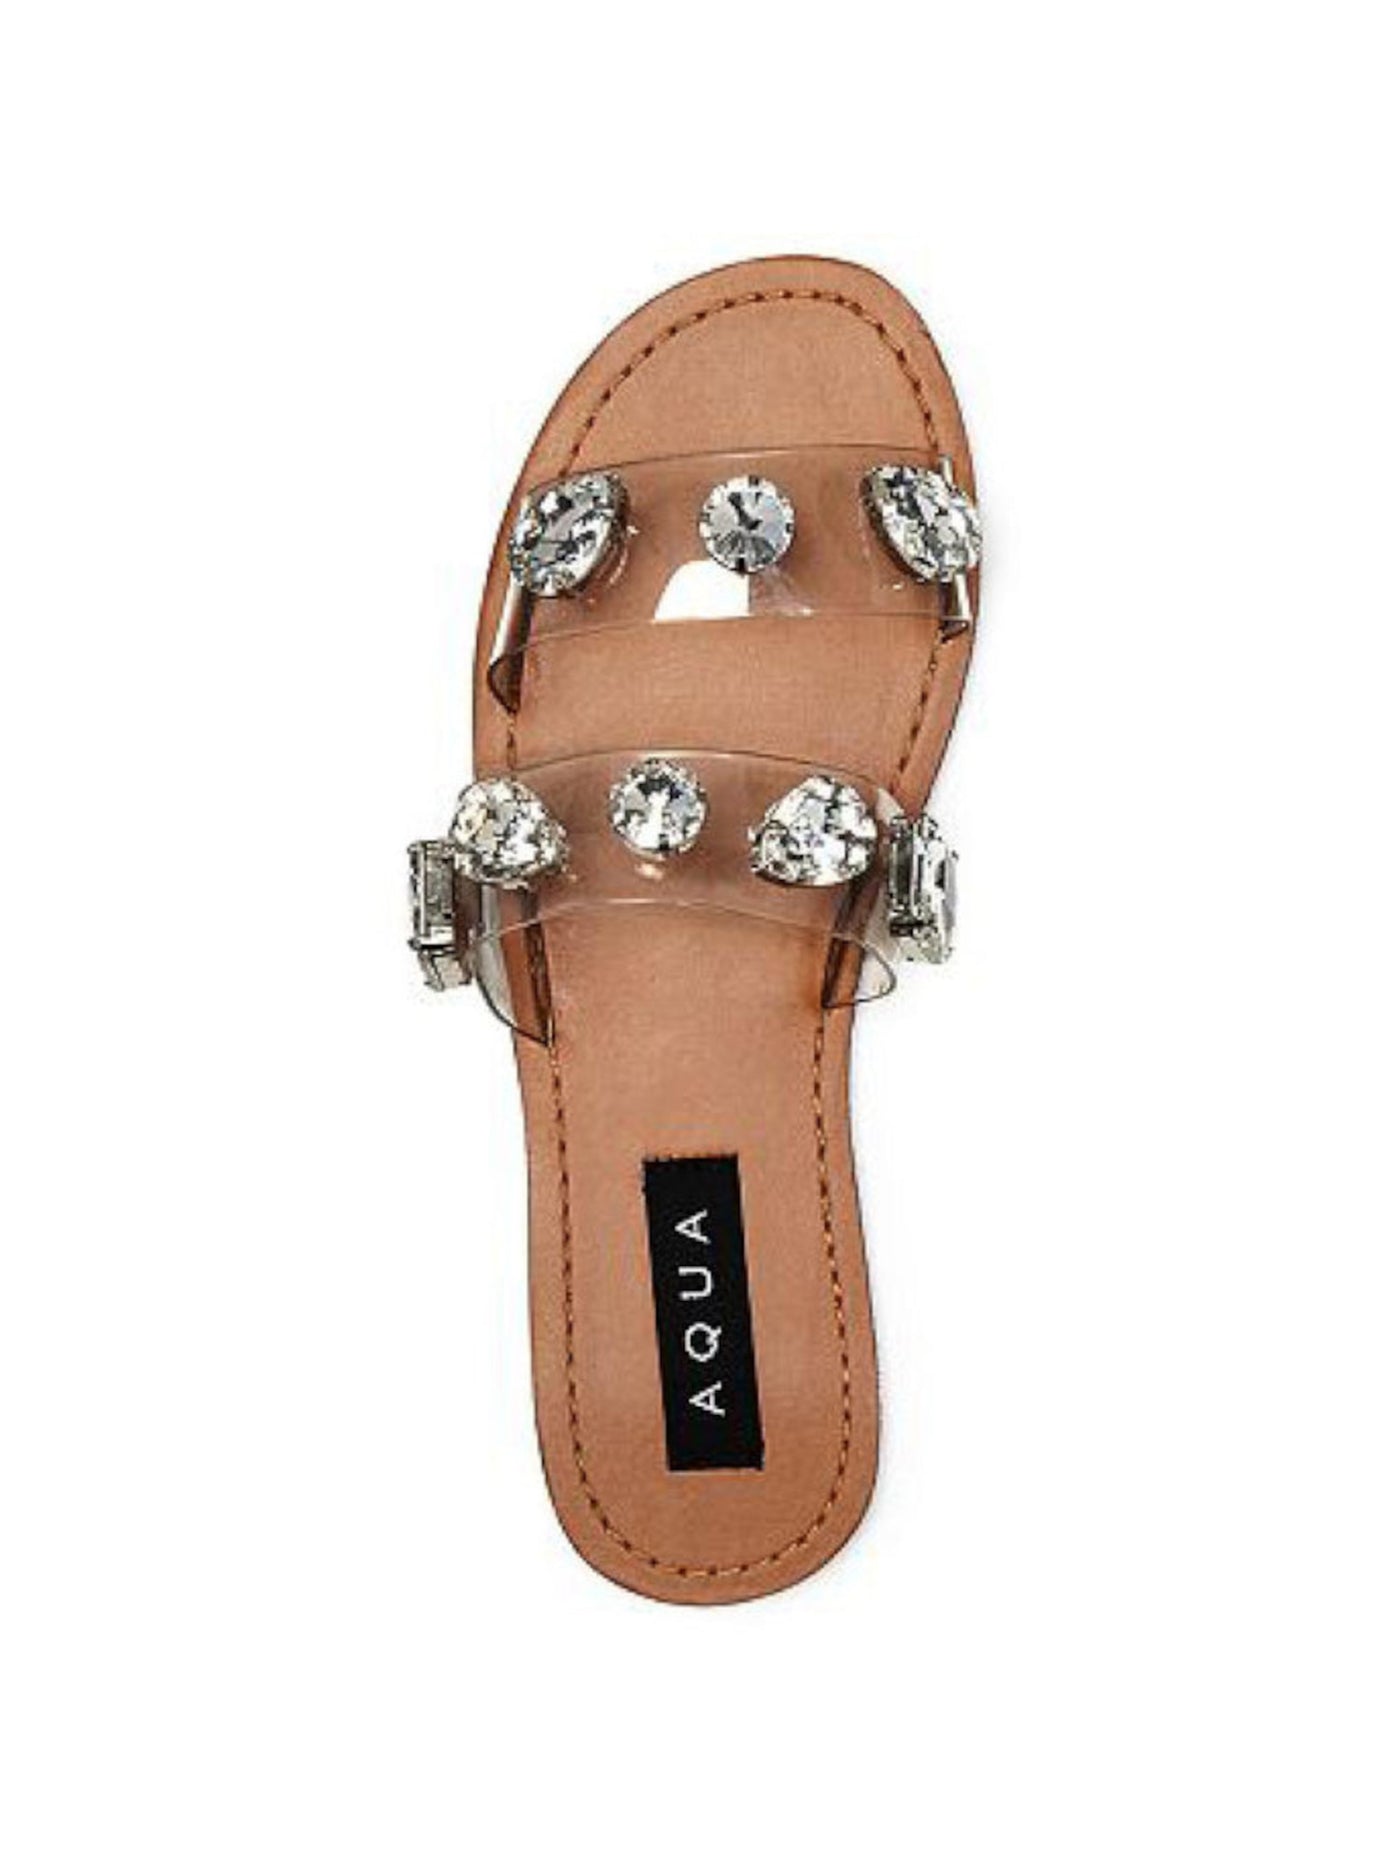 AQUA Womens Clear Embellished Daze Round Toe Slip On Slide Sandals Shoes